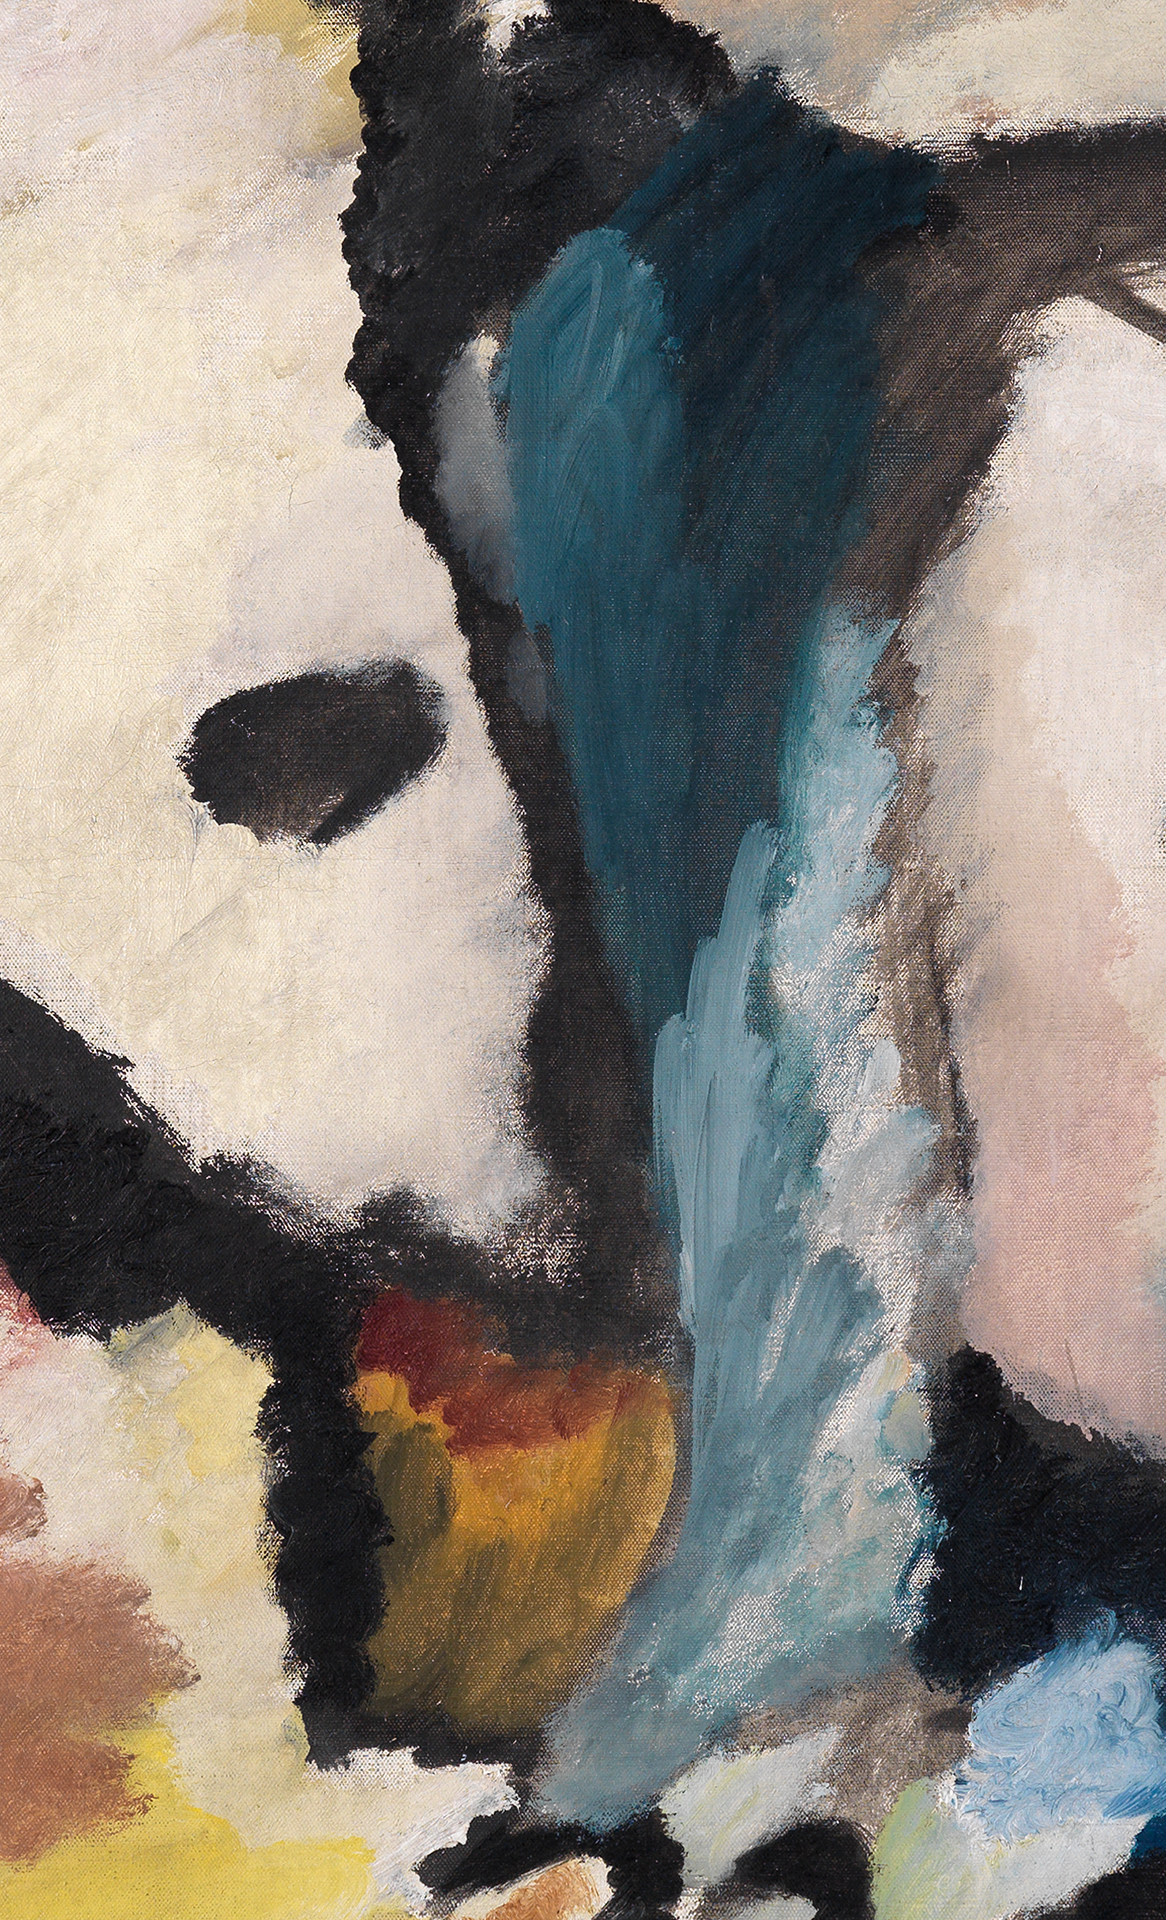 Ausschnitt aus Wassily Kandinskys Gemälde Improvisation 13, Detail: helle, wattige und dunkle Farbflächen treffen aufeinander.